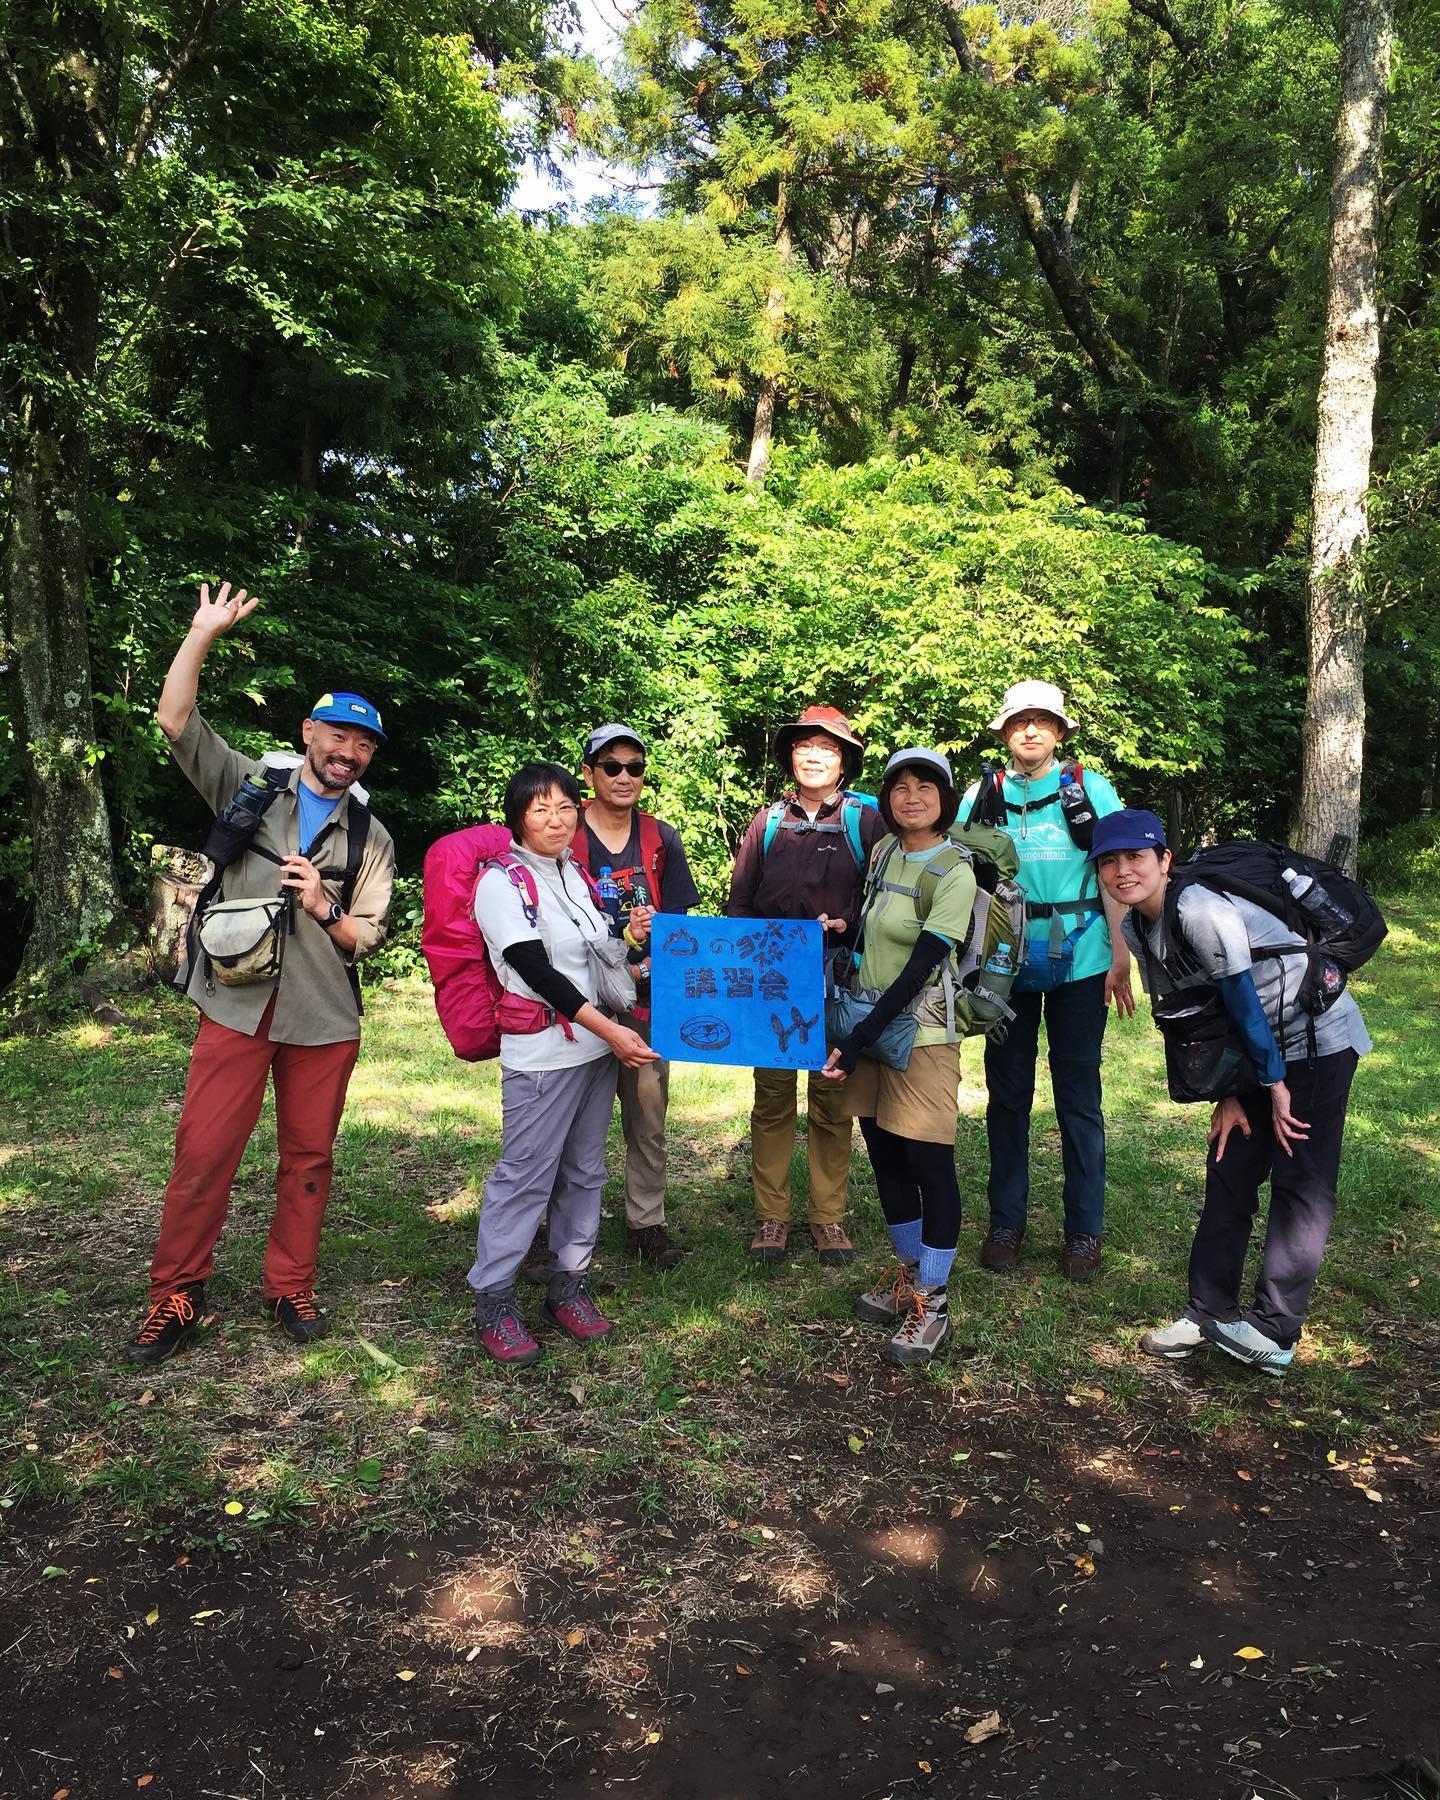 6月3日（土）山の講習会基礎編・登山の基礎を学ぶ・第3回目弘法山公園セルフレスキューに行って来ました。